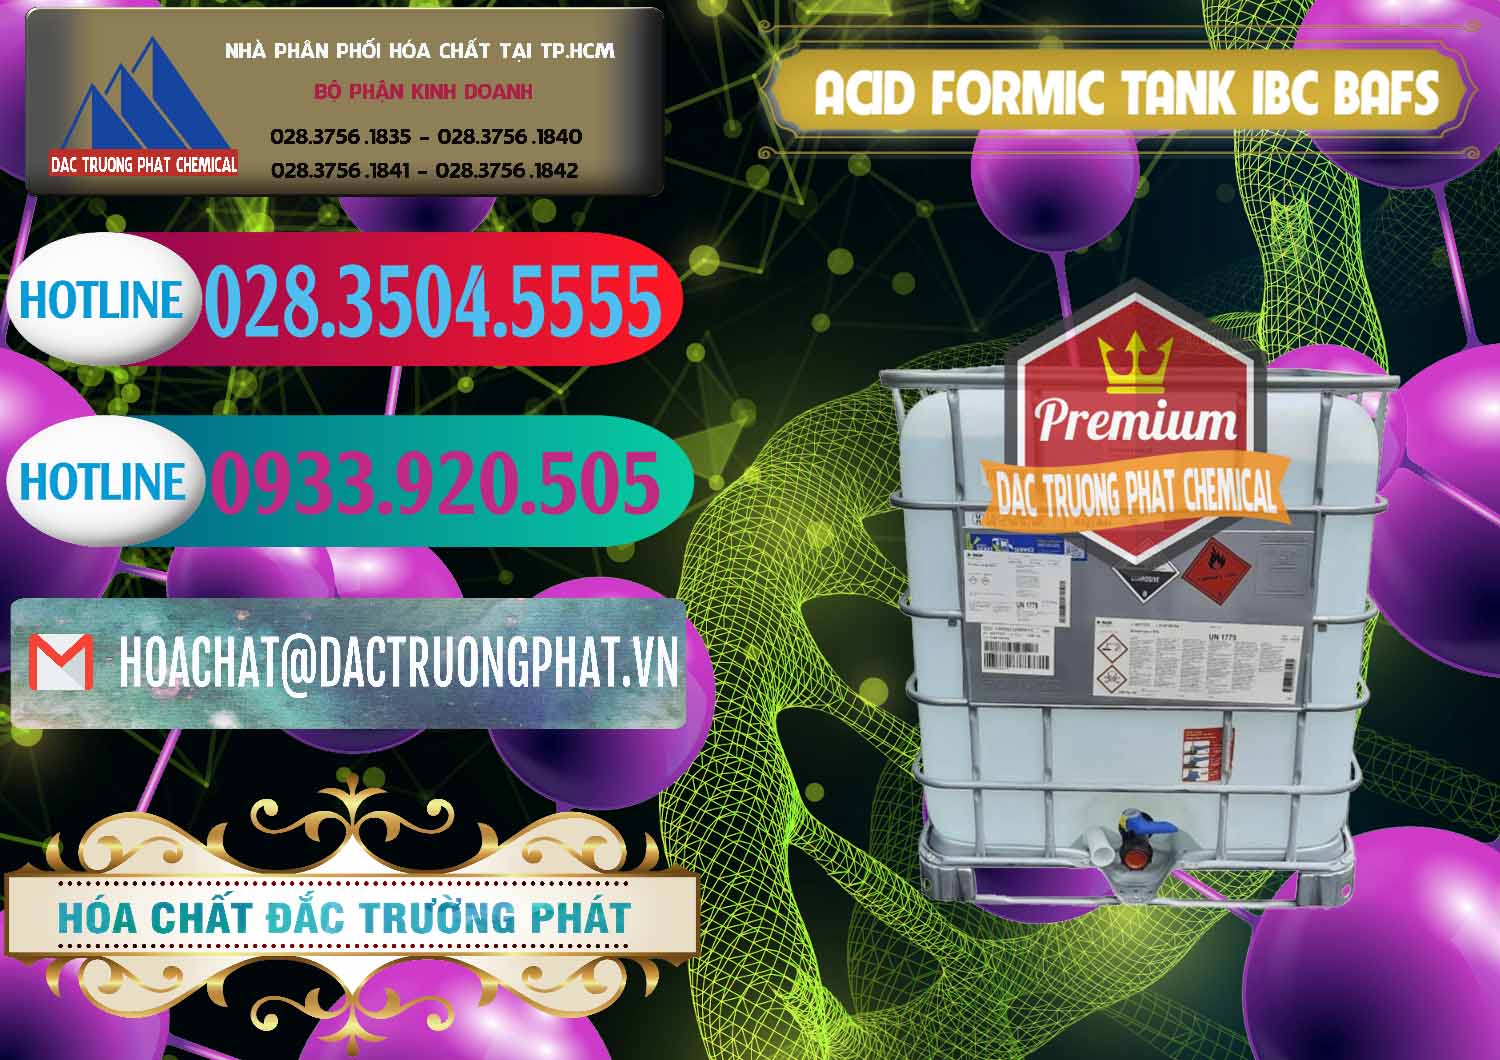 Nơi bán & phân phối Acid Formic - Axit Formic Tank - Bồn IBC BASF Đức - 0366 - Phân phối & kinh doanh hóa chất tại TP.HCM - truongphat.vn